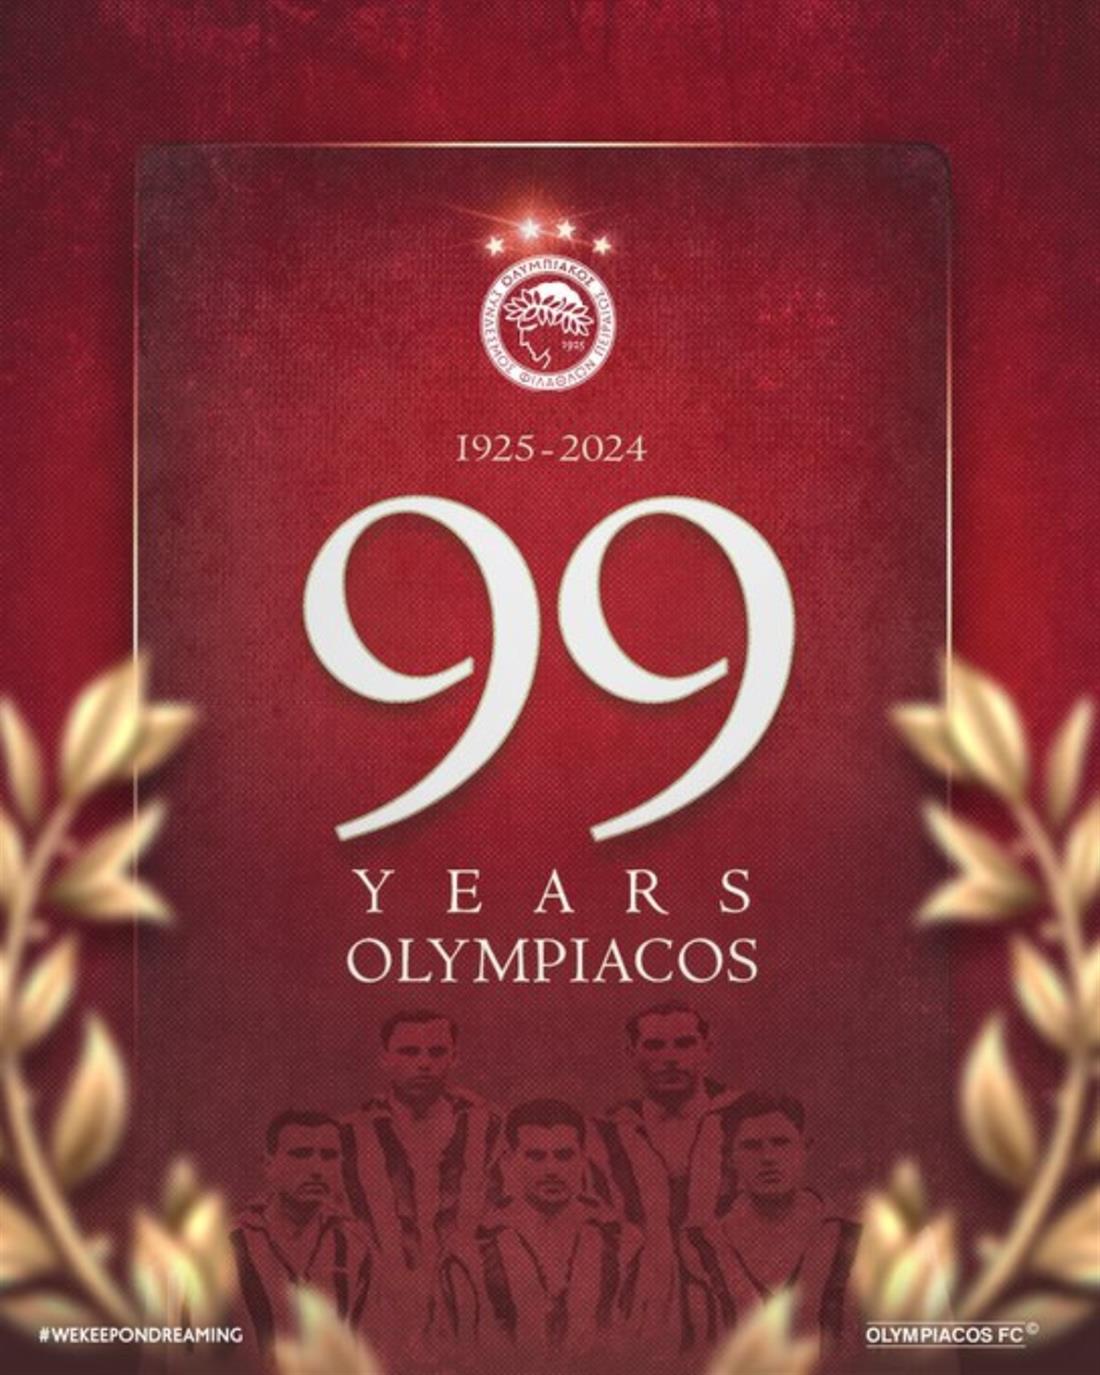 Ολυμπιακός - 99 ετών